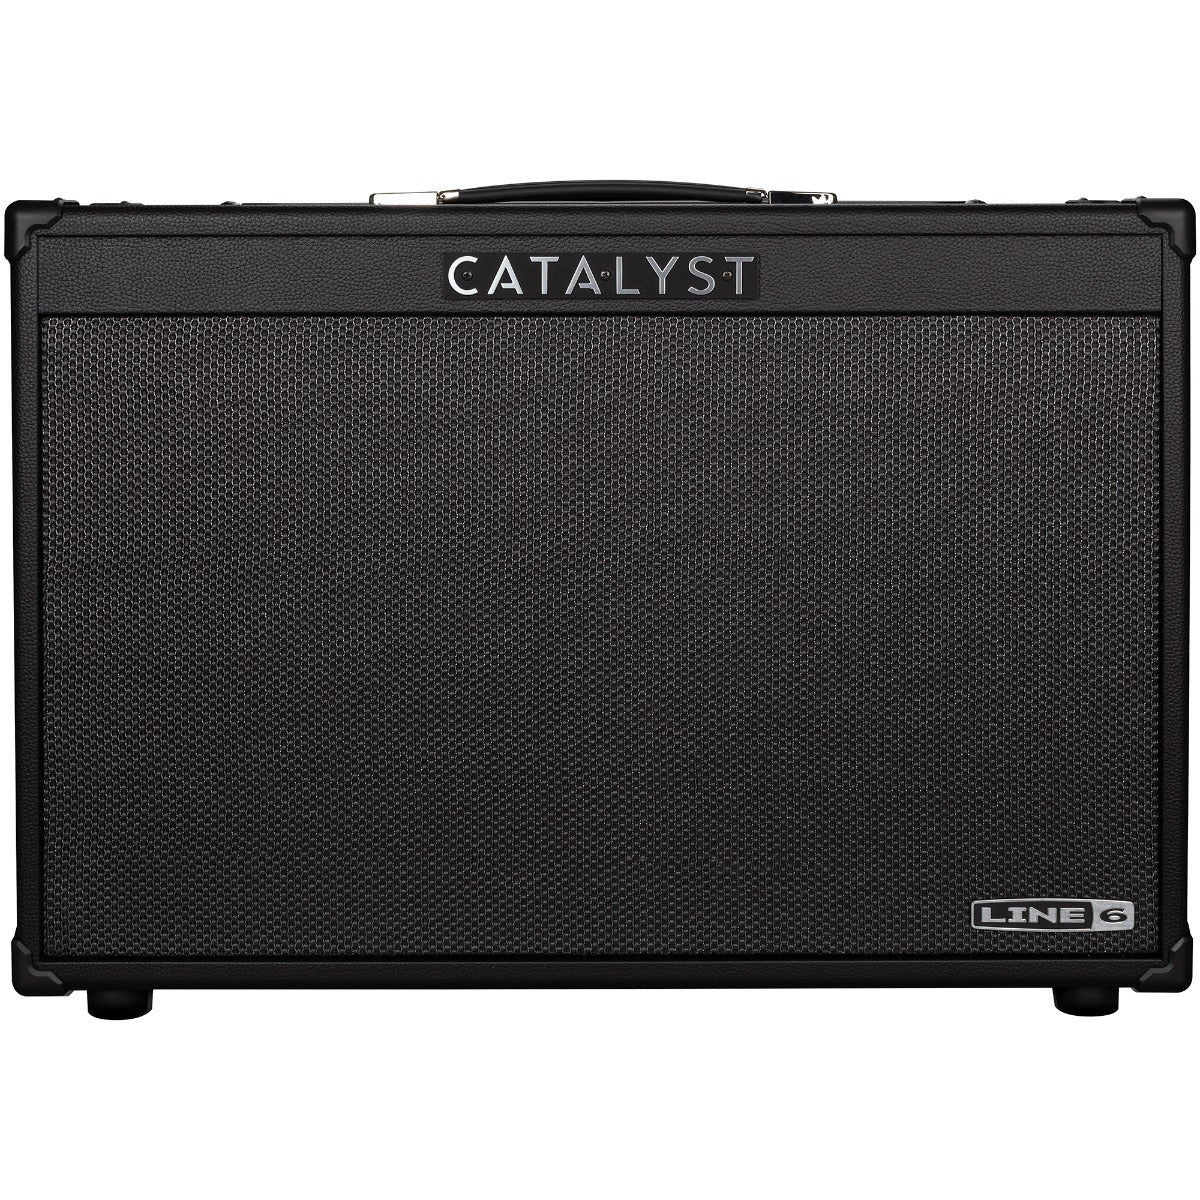 Line 6 Catalyst 200 2x12 Combo Guitar Amplifier, View 2